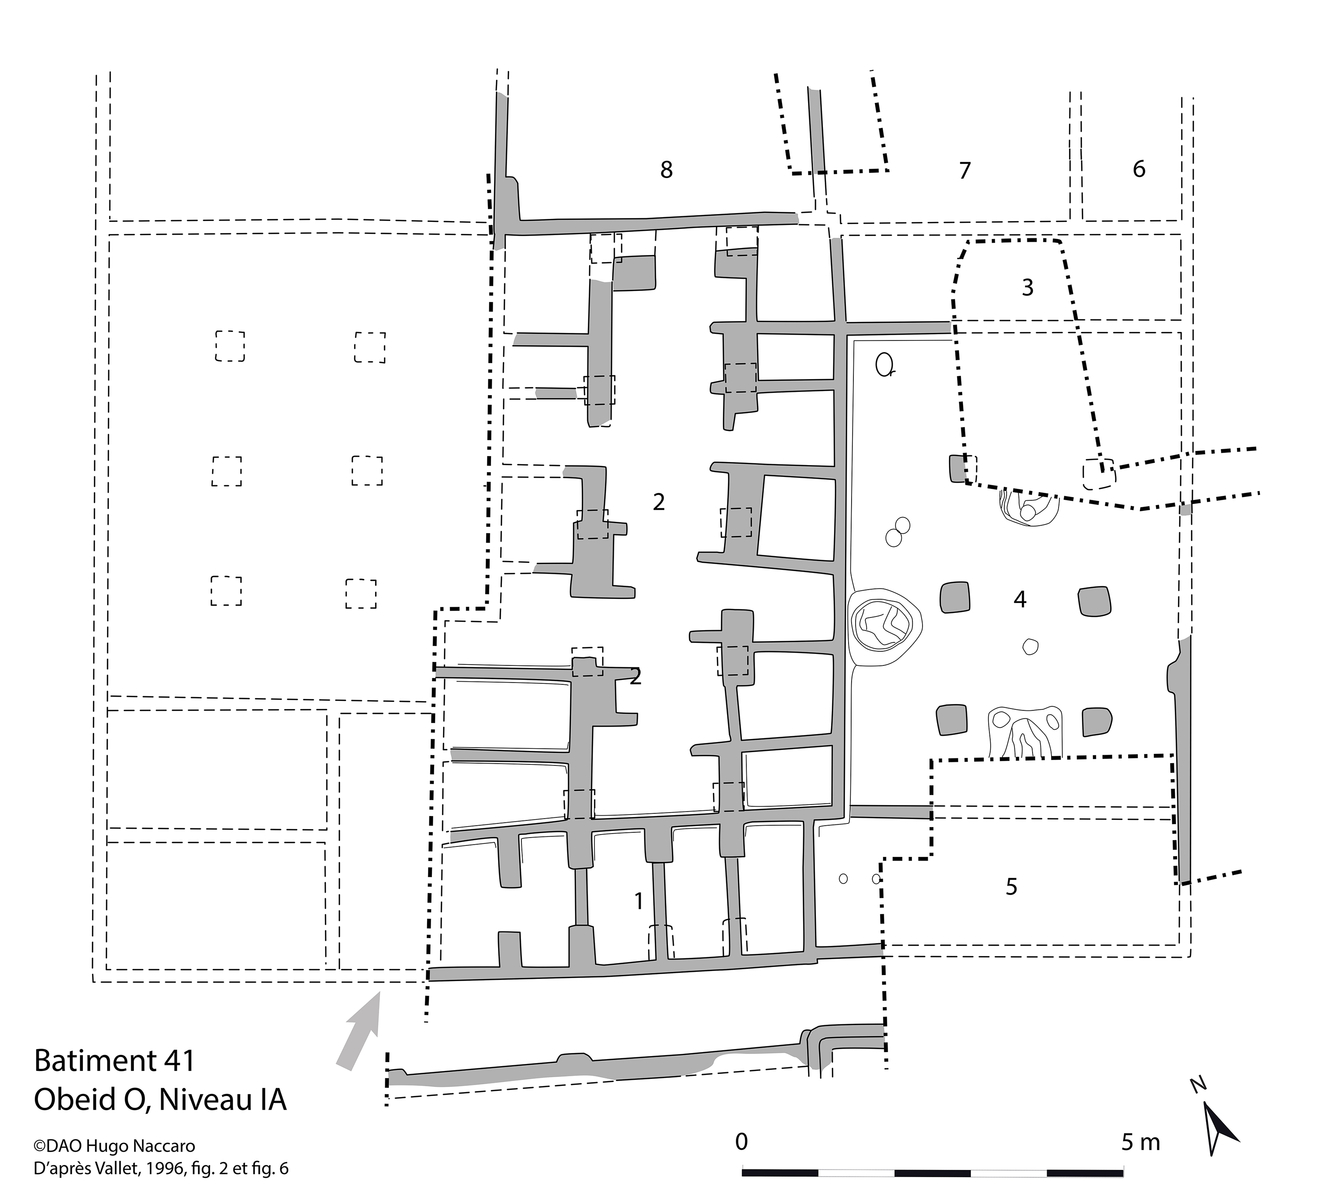 Plan de la maison 41. © Hugo Naccaro, d’après Vallet, 1996, p. 122, fig. 2 et p. 126, fig. 6